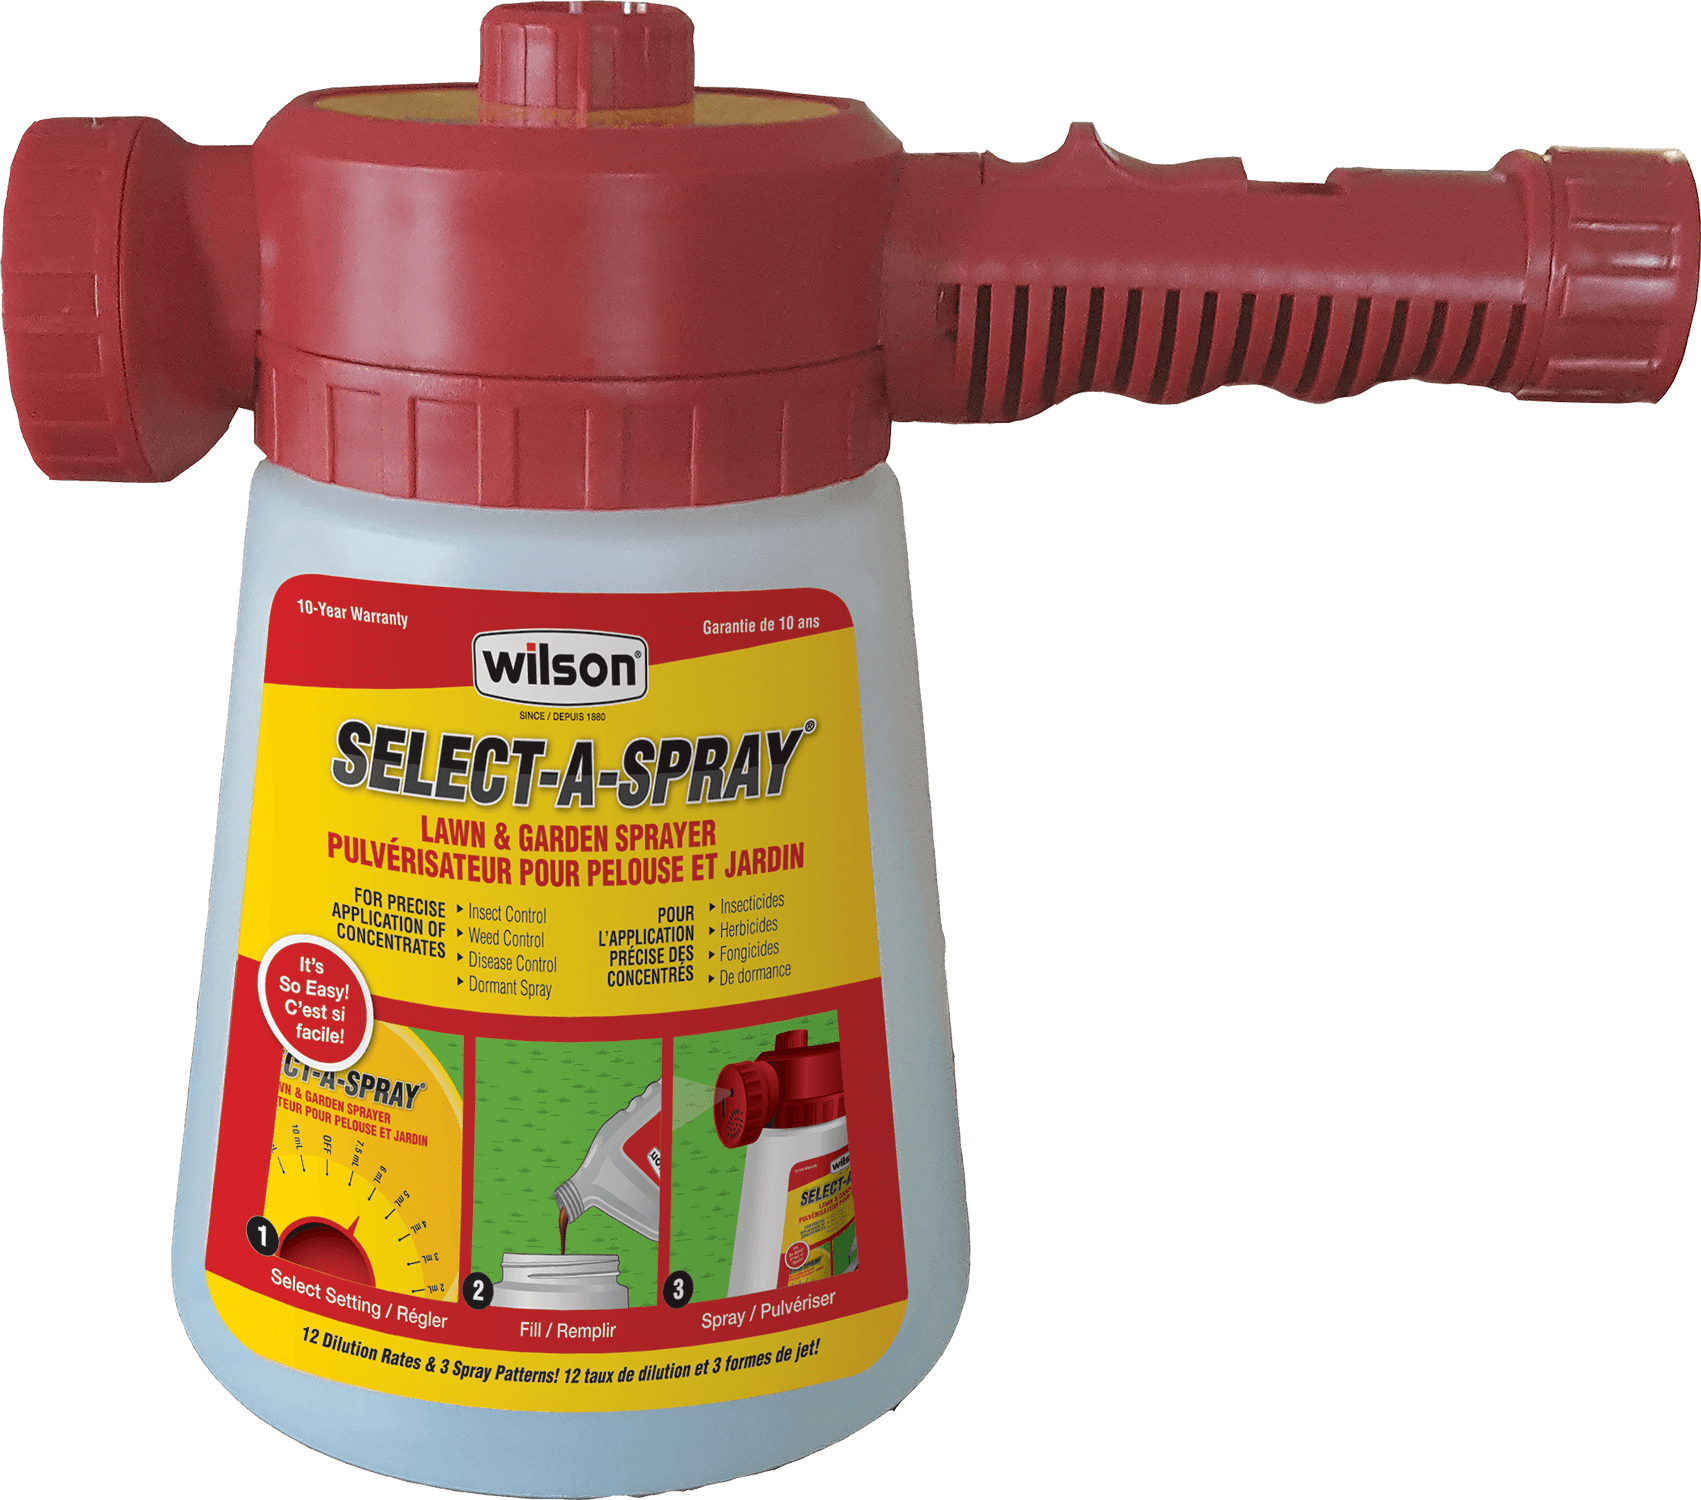 Wilson Select A Spray Lawn & Garden Sprayer